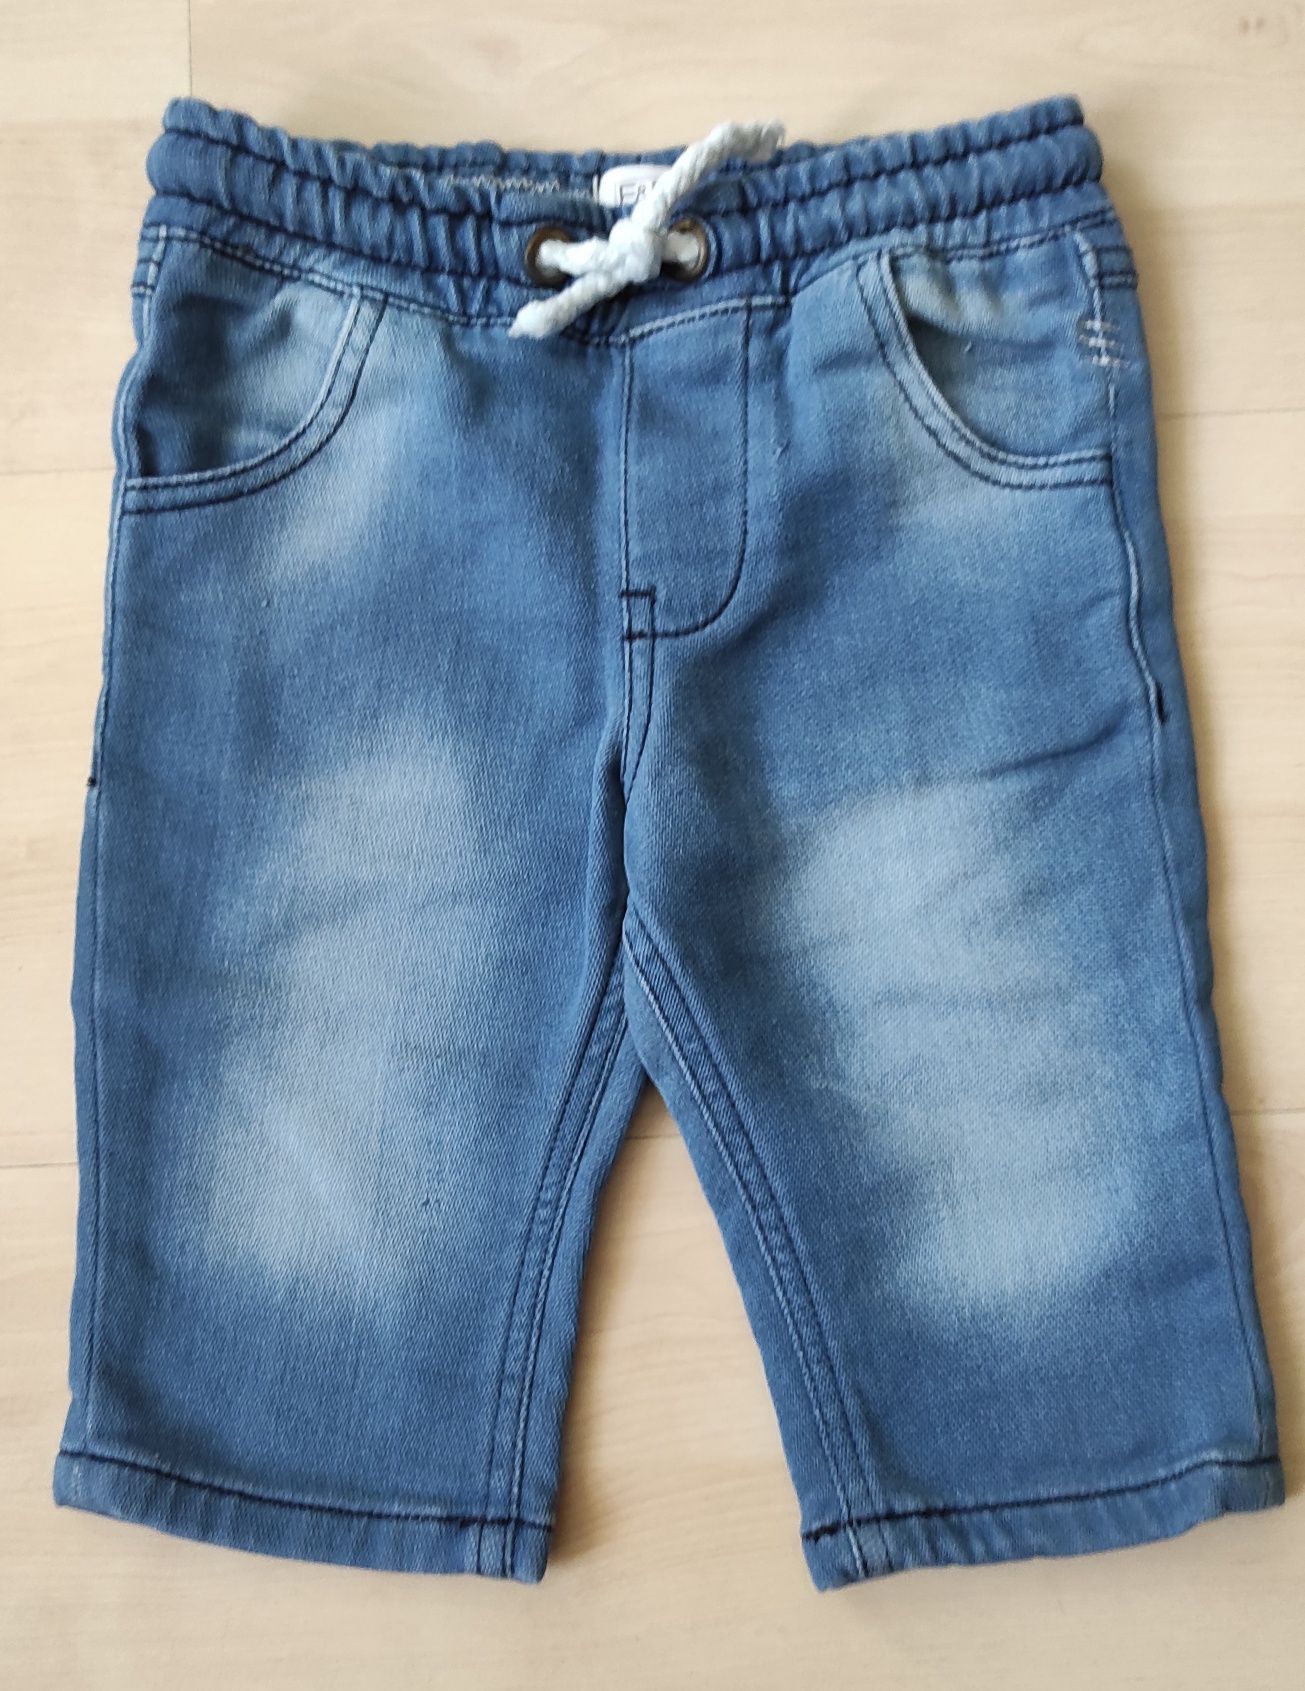 Krótkie spodenki jeansowe dla chłopca rozm 98